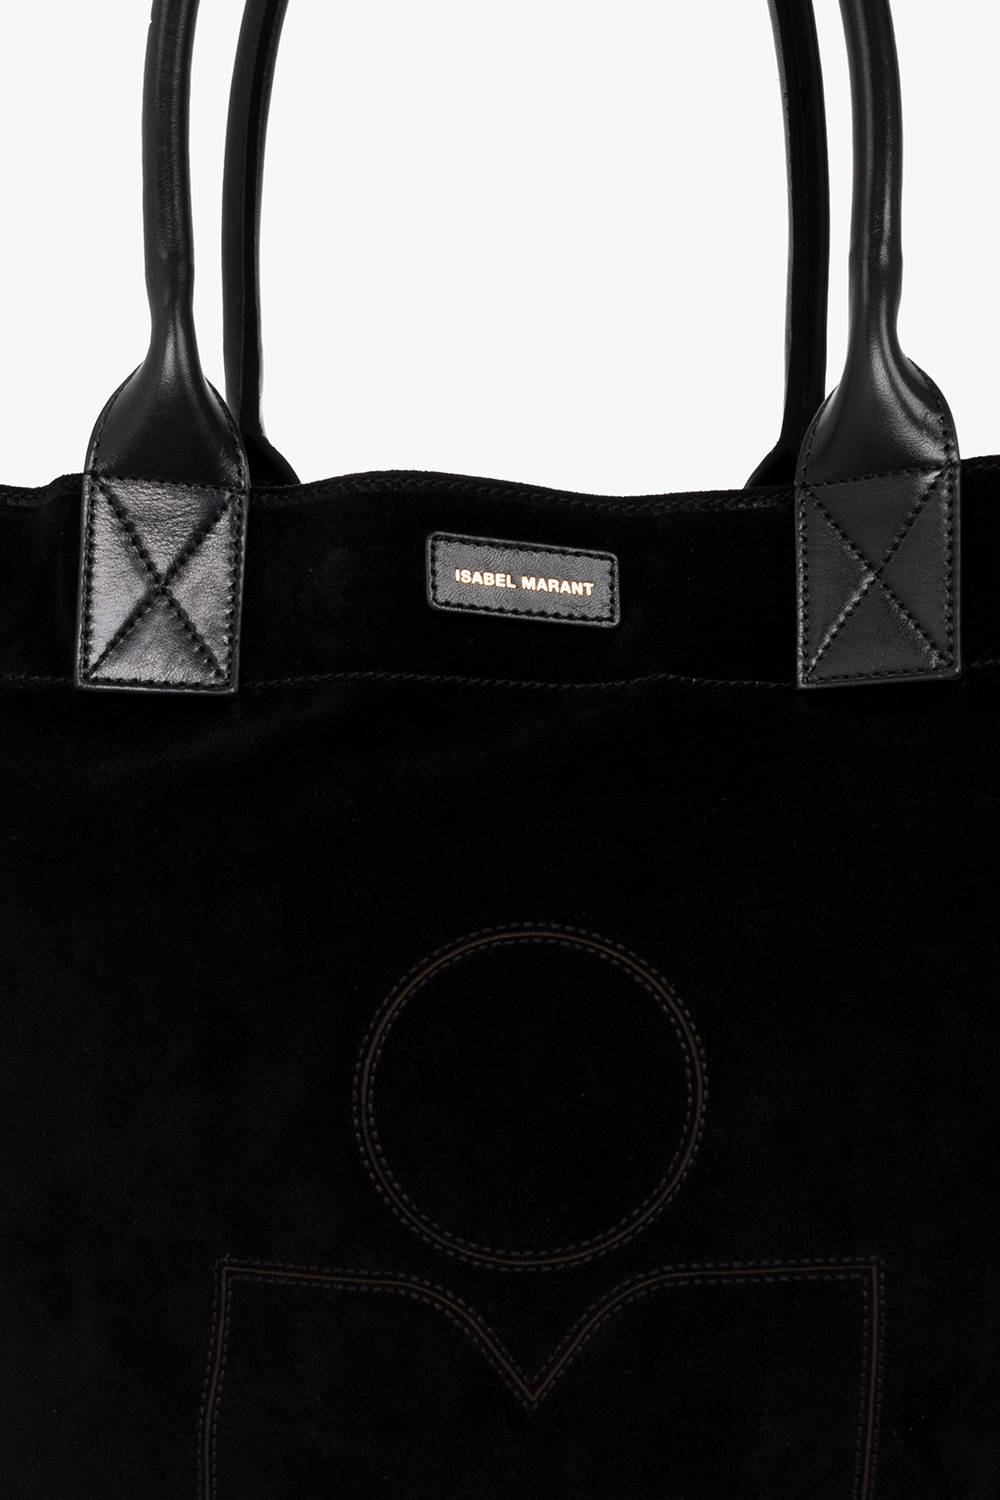 Isabel Marant ‘Yenky’ shopper bag